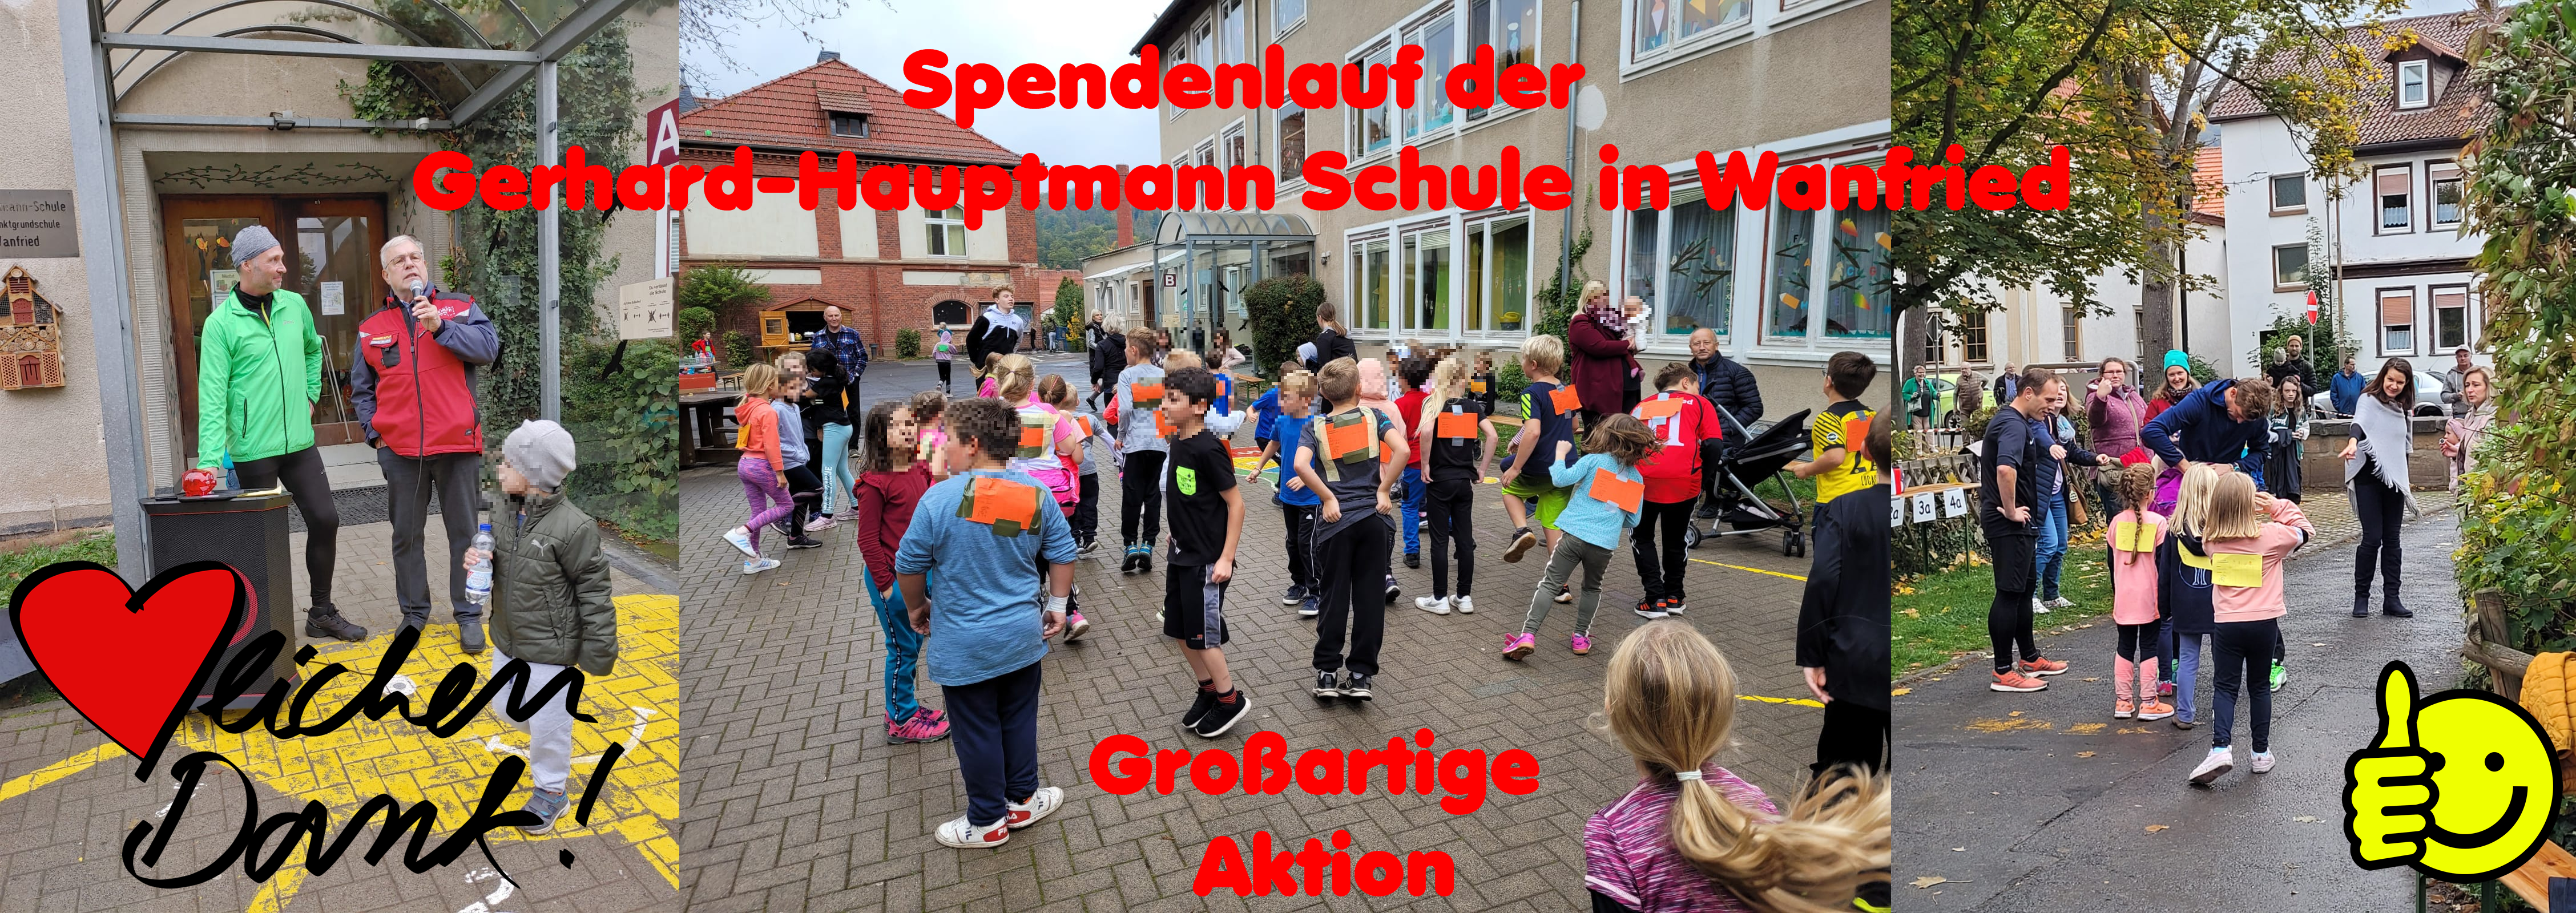 Ein toller Spendenlauf der Gerhard-Hauptmann-Schule in Wanfried! Danke an die Schulleiterin Frau Hoppe und ihr tolles Orgateam! ESCHWEGE HILFT! Sagt DANKE!!


